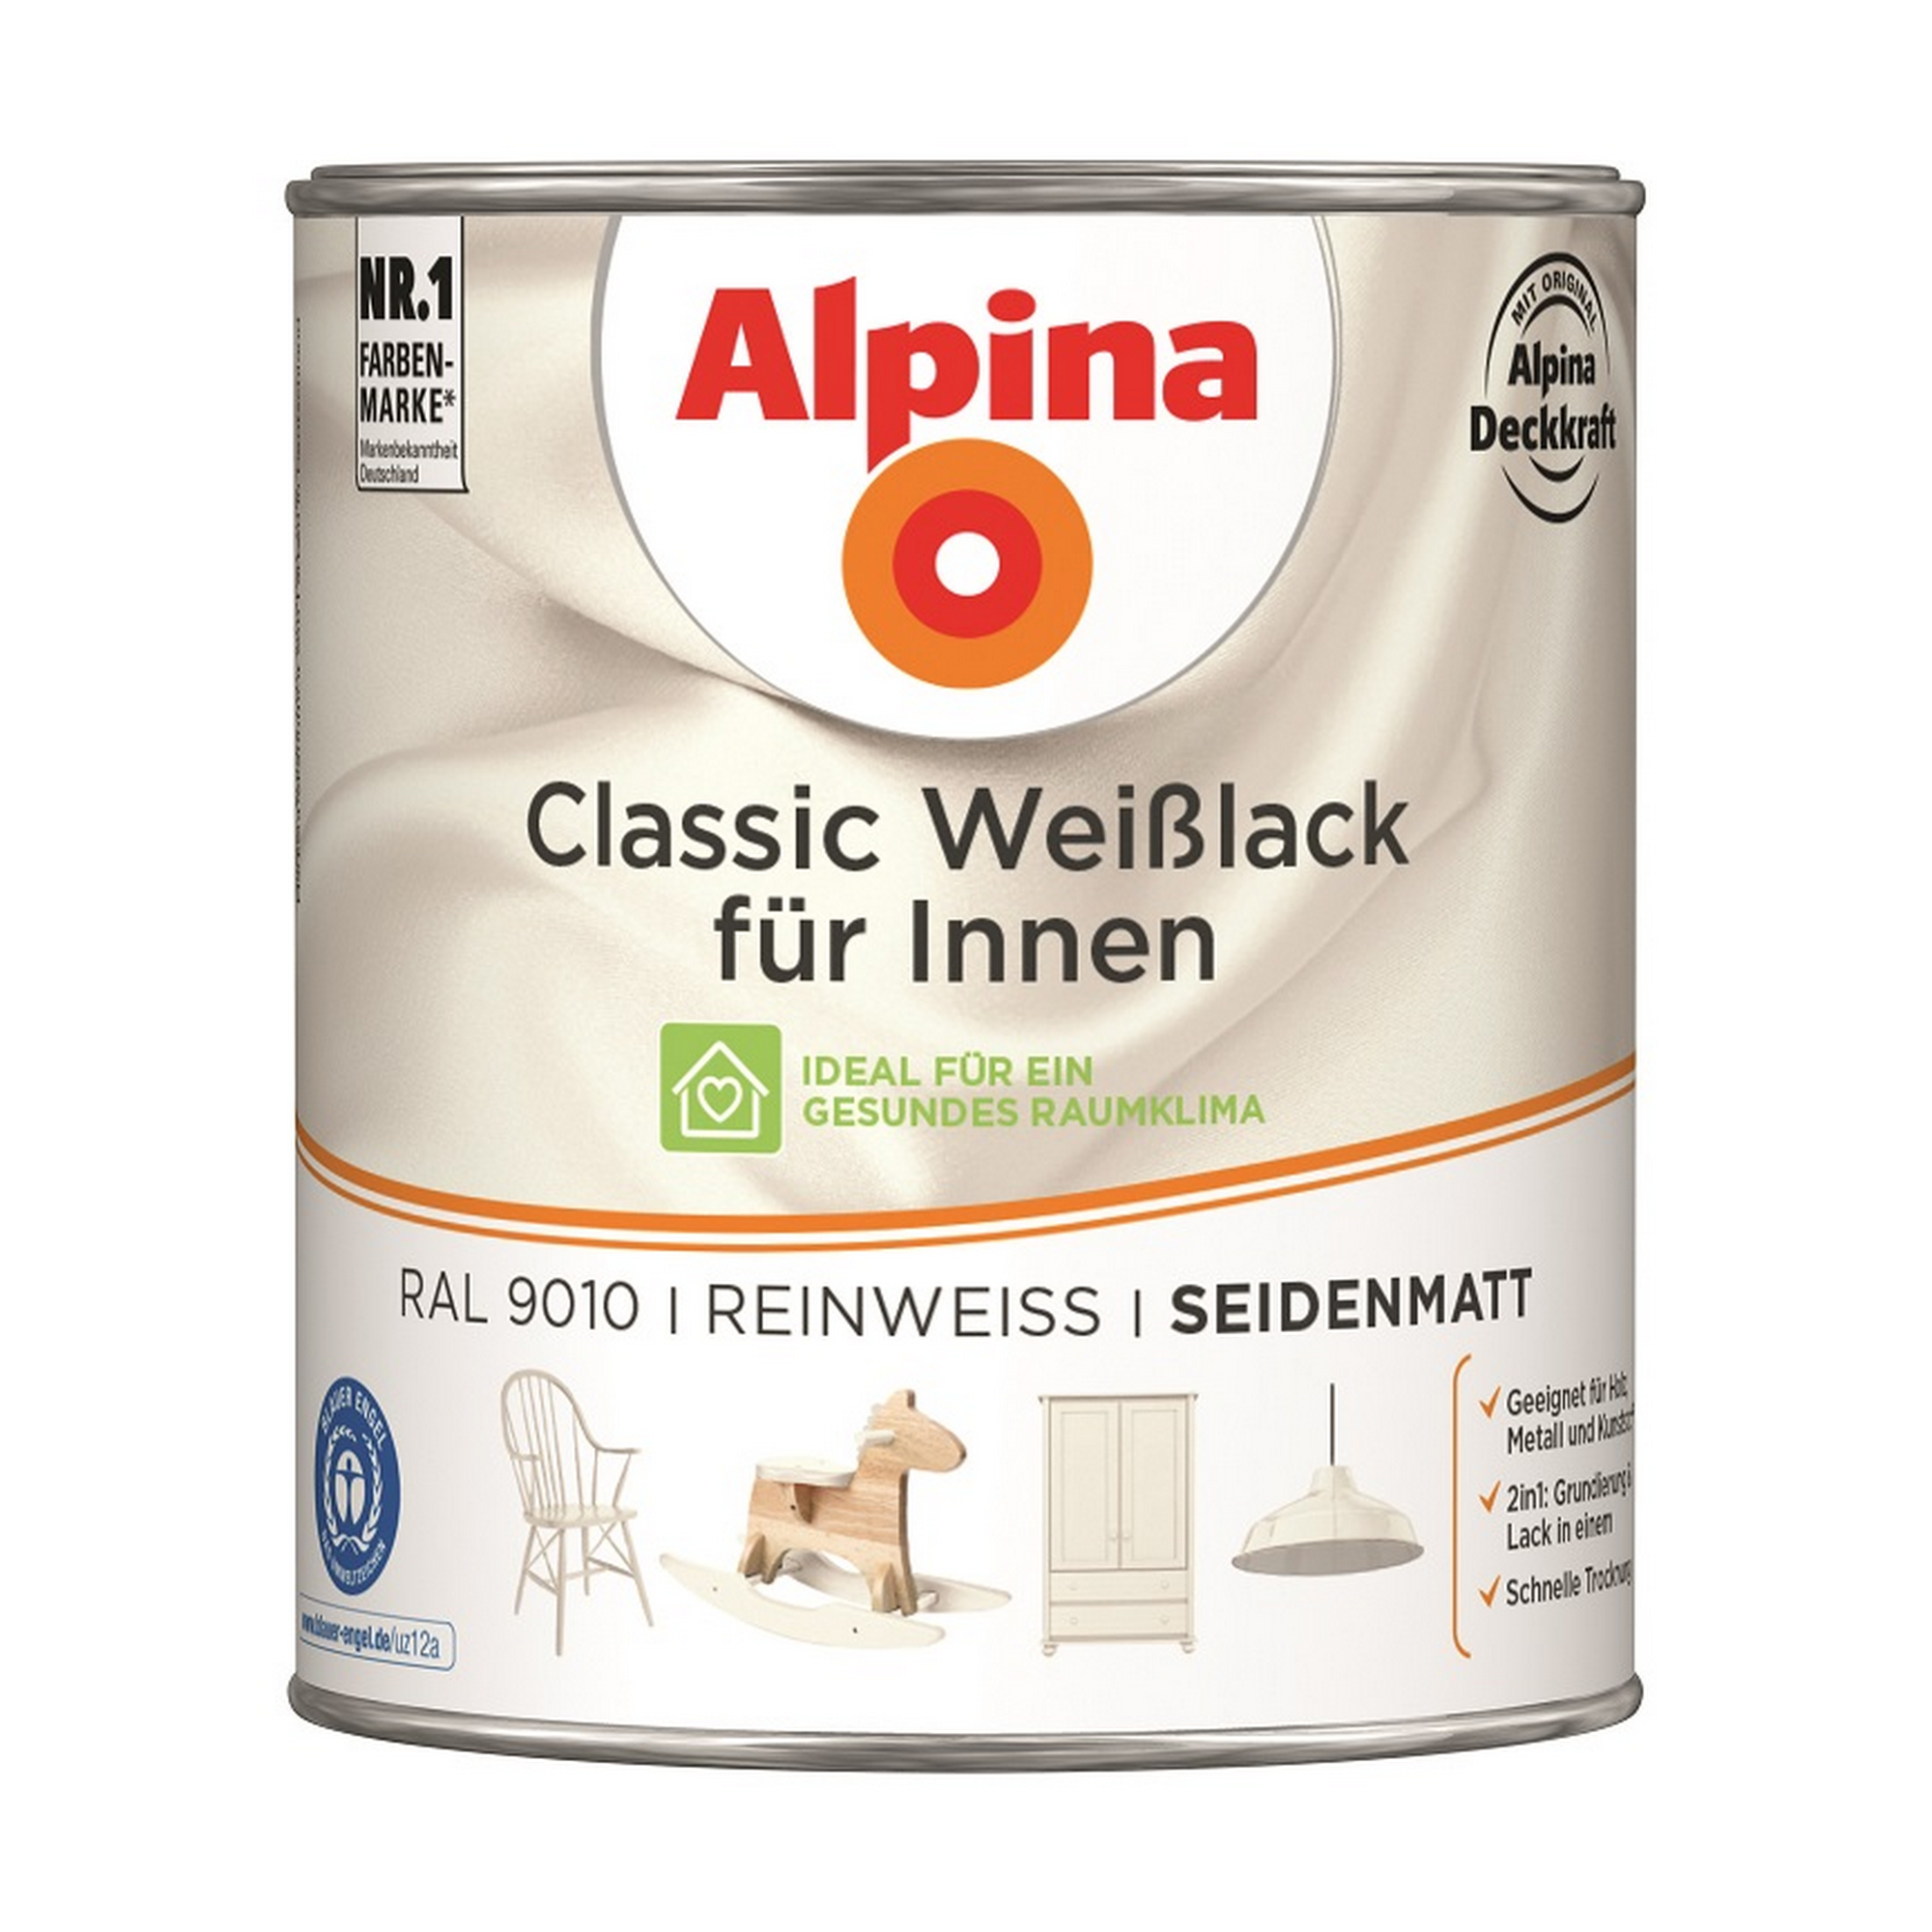 Weißlack für Innen reinweiß seidenmatt 750 ml + product picture